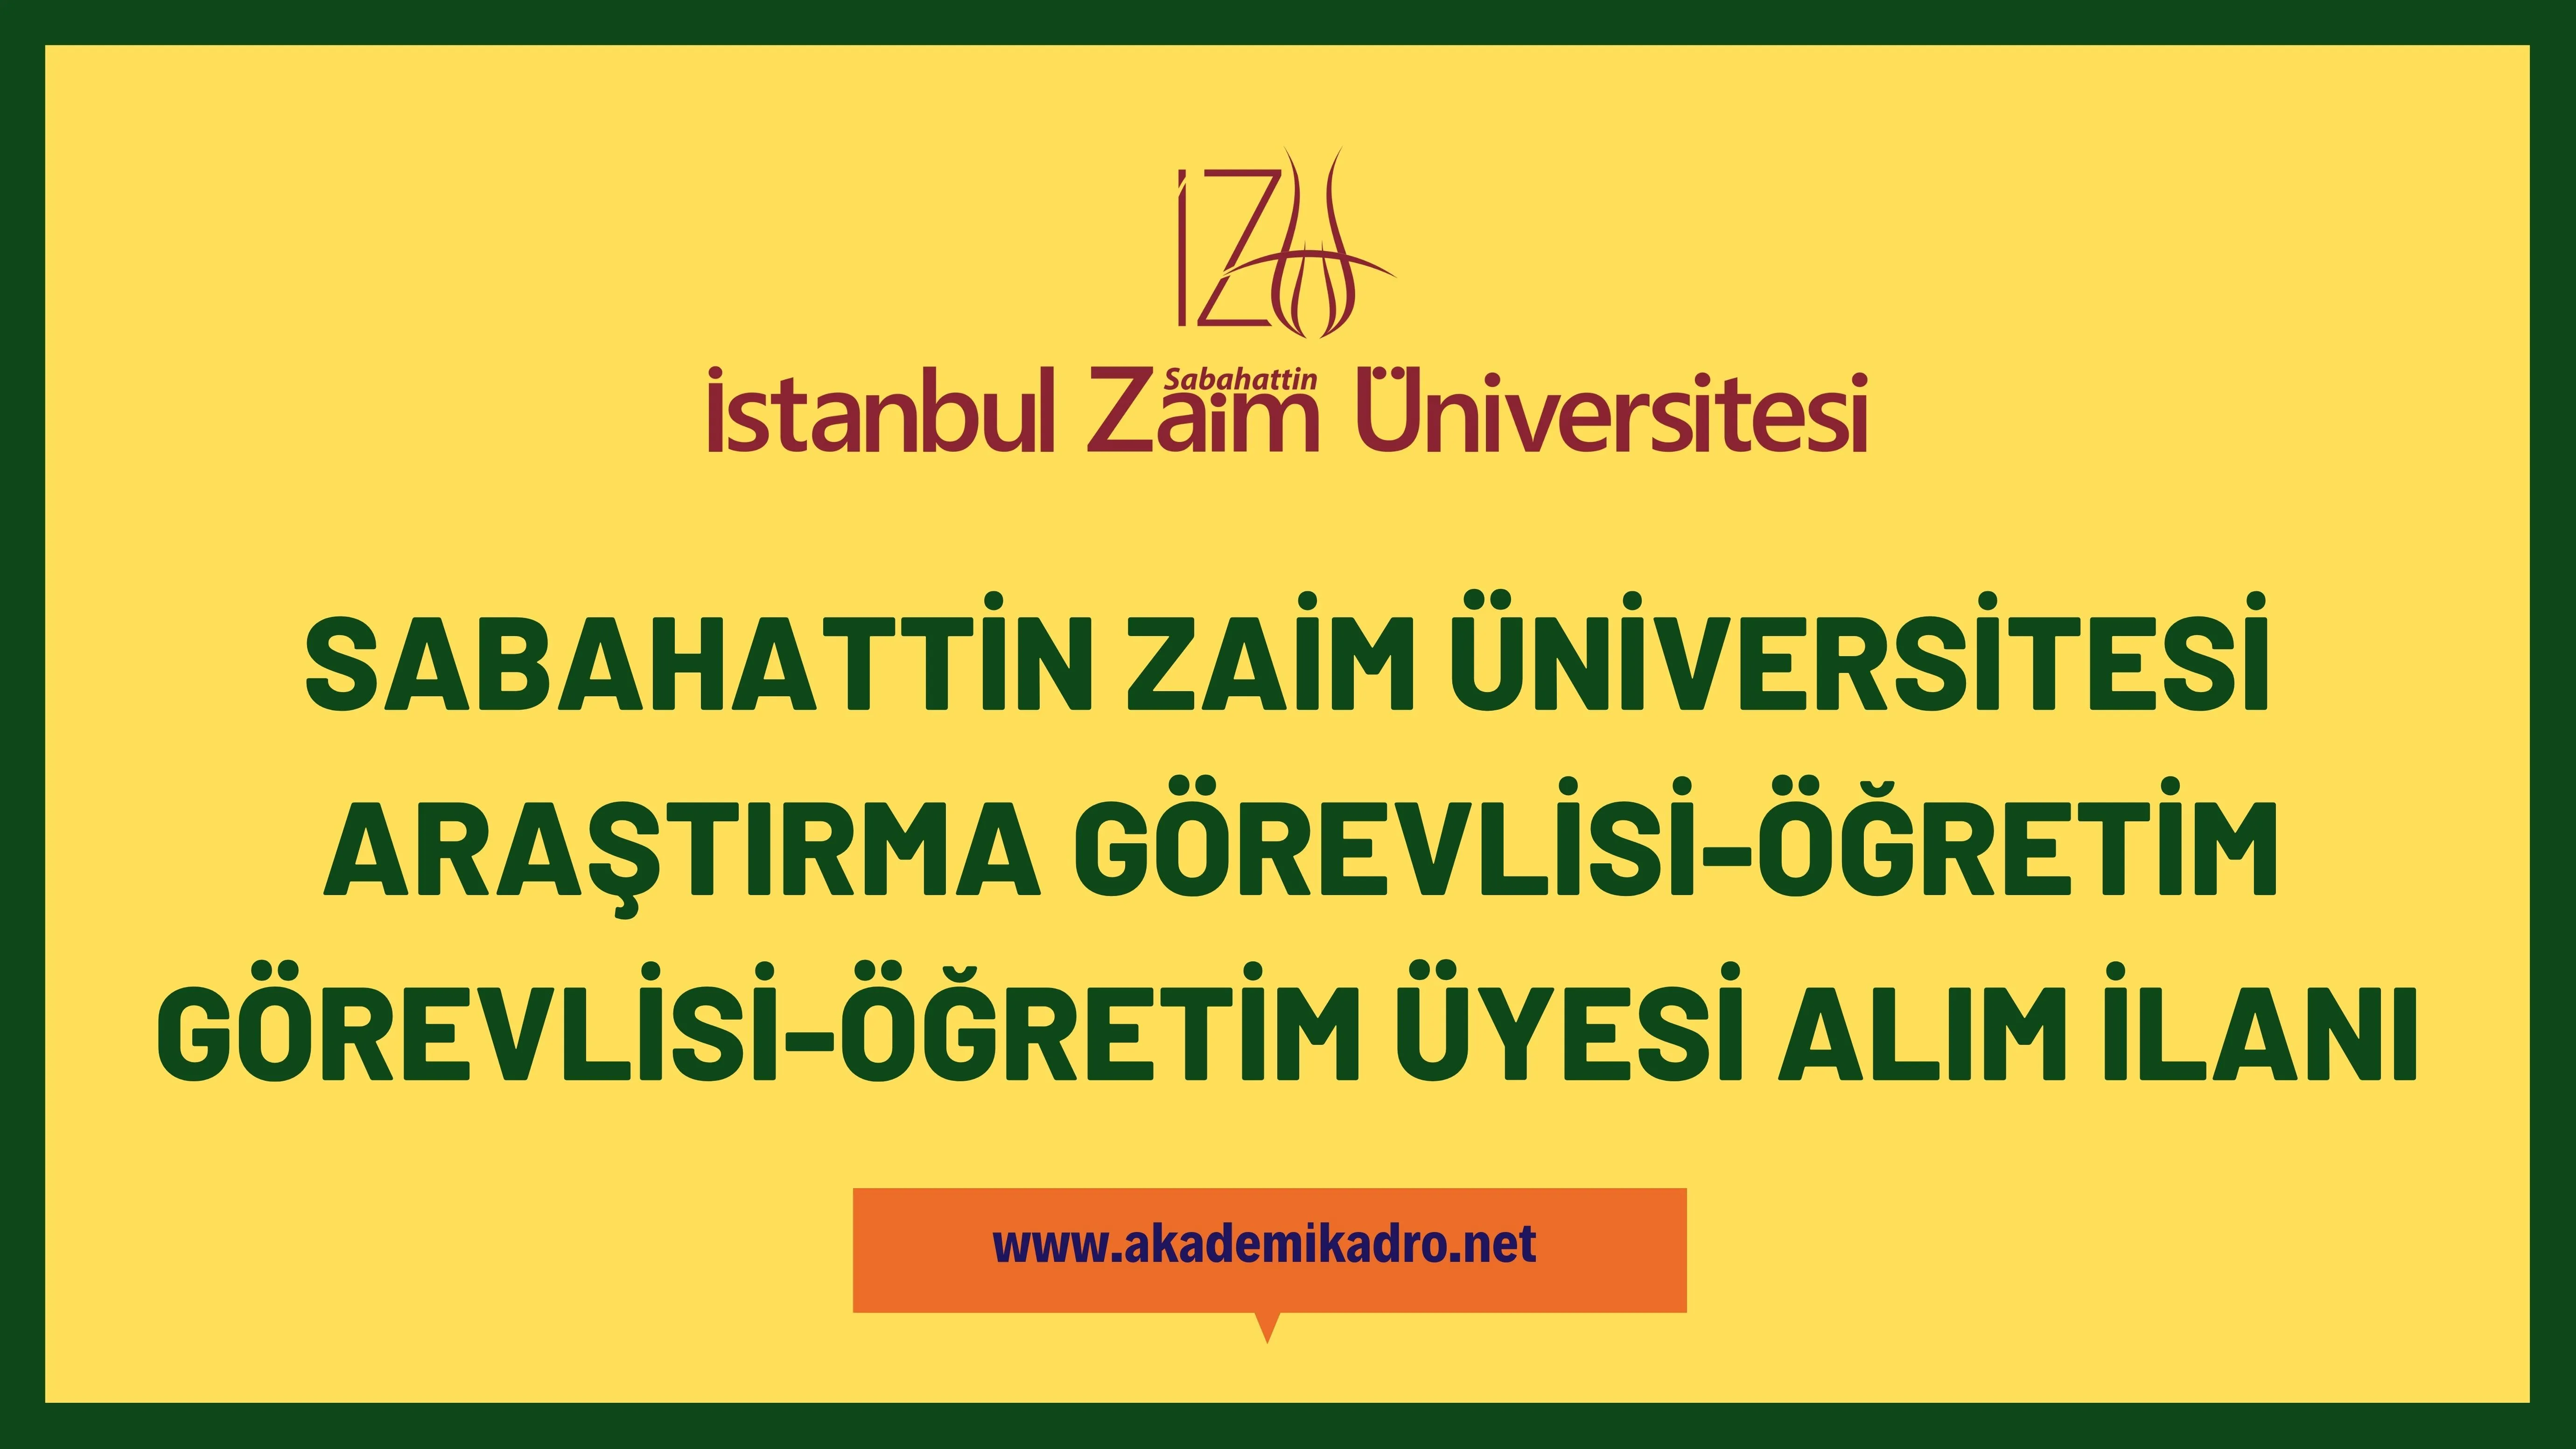 İstanbul Sabahattin Zaim Üniversitesi 10 Araştırma görevlisi, 2 Öğretim görevlisi ve 29 Öğretim üyesi alacak.